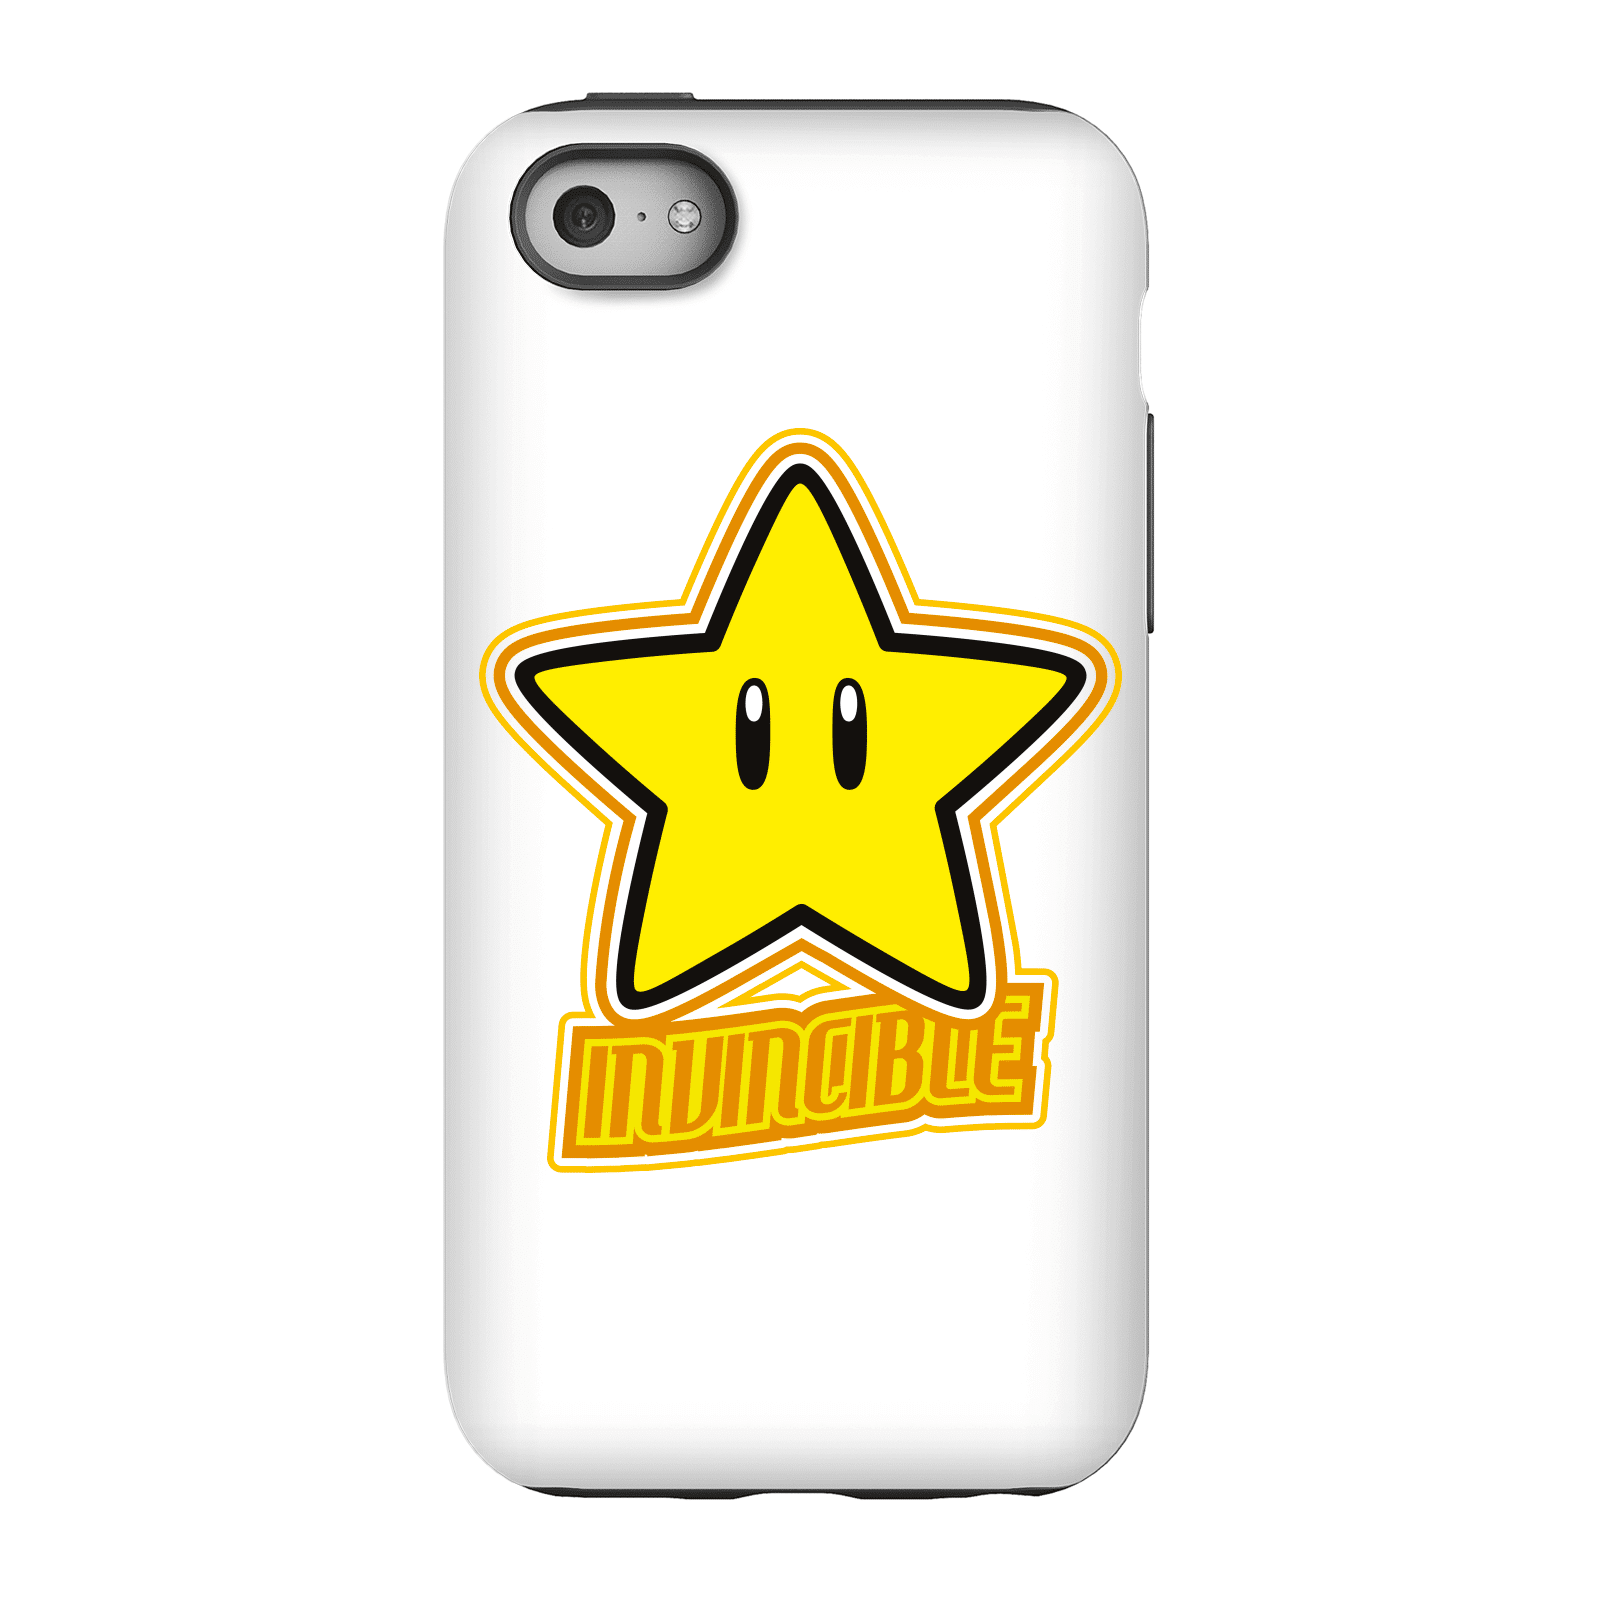 Nintendo Super Mario Invincible Phone Case - iPhone 5C - Tough Case - Gloss